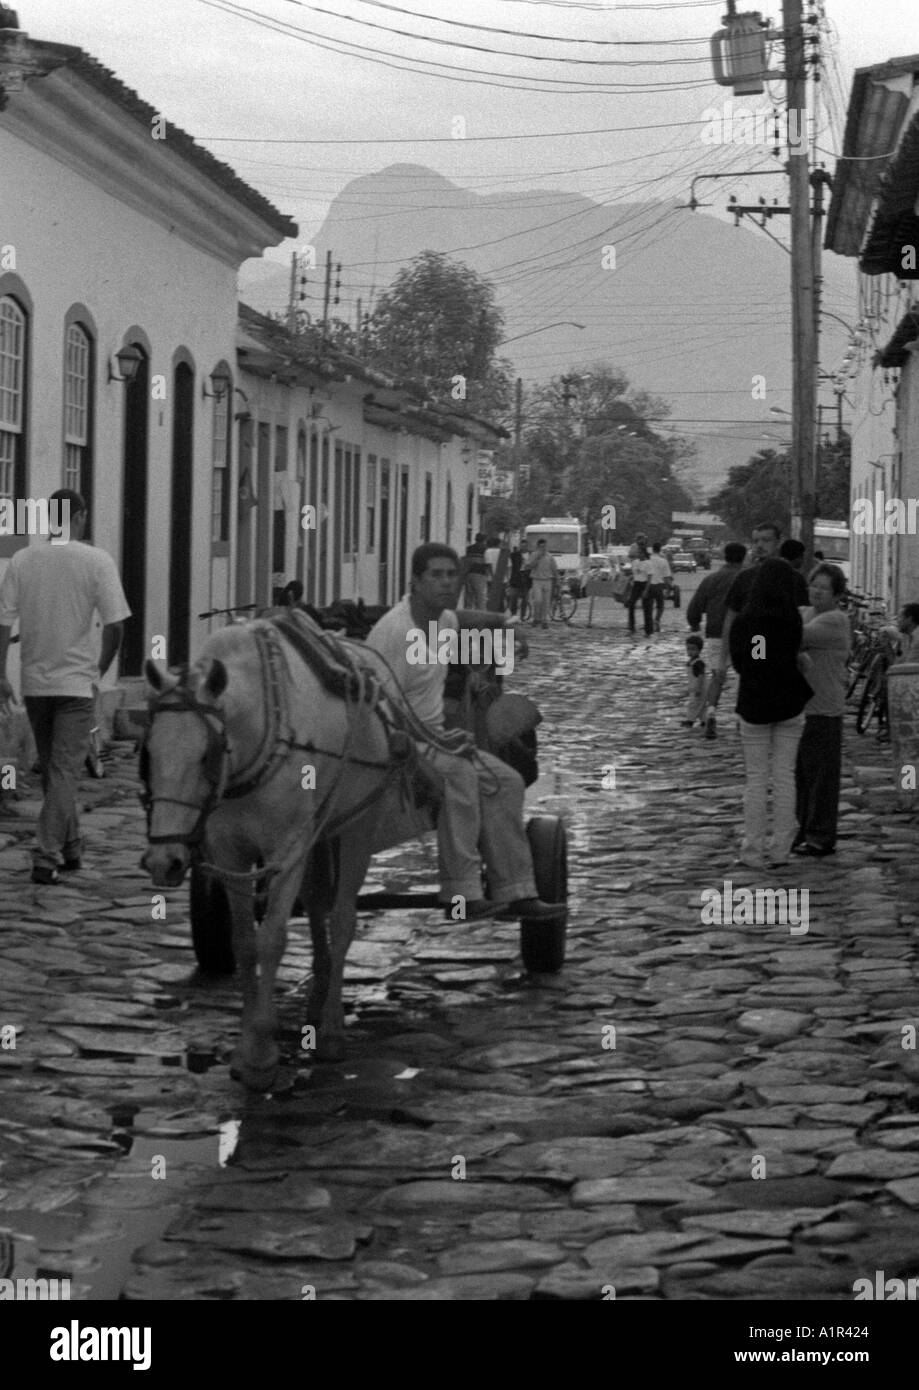 Panier cheval rural traditionnel caractéristique ville coloniale d'occupation homme femme Paraty Rio de Janeiro Brésil Brasil Amérique Latine du Sud Banque D'Images